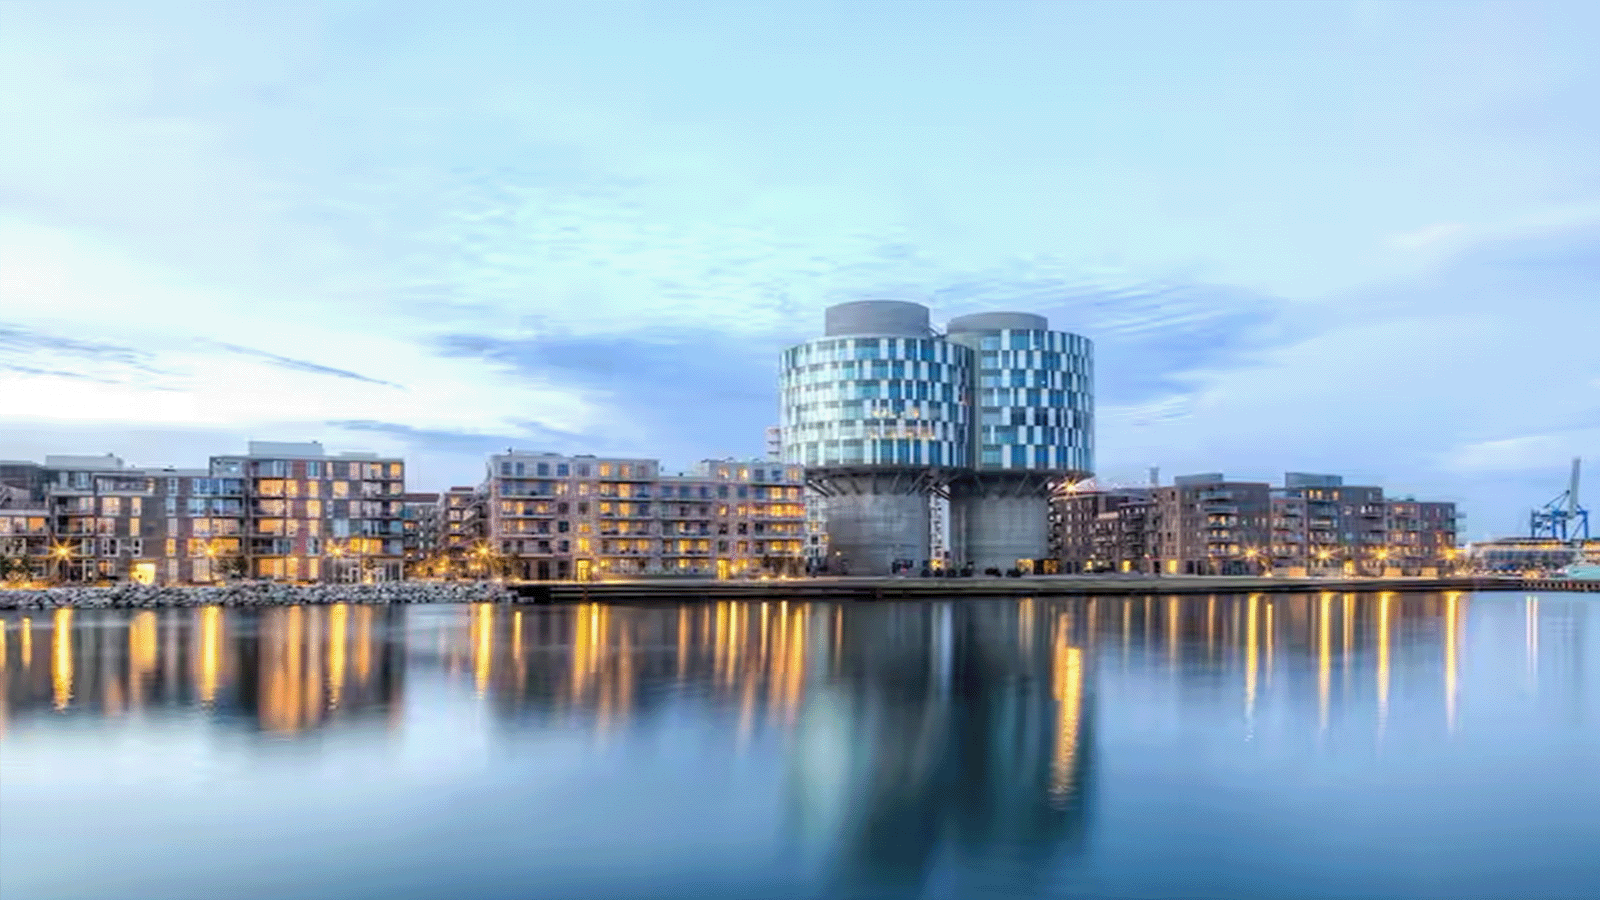 Parkmans brugere kan fremadrettet bruge By&Havns parkeringshuse i Nordhavn og Ørestaden